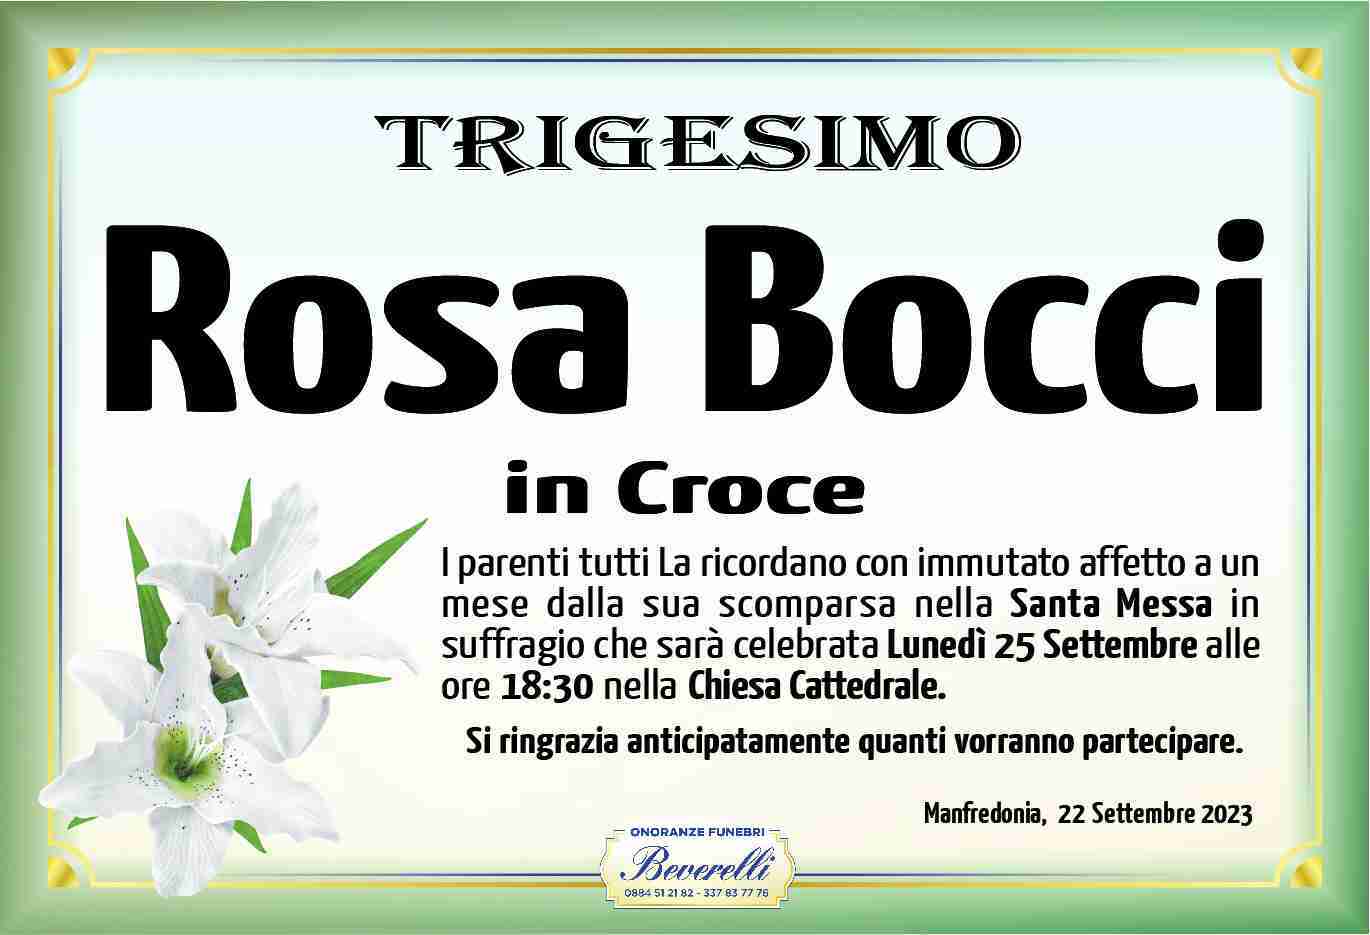 Rosa Bocci